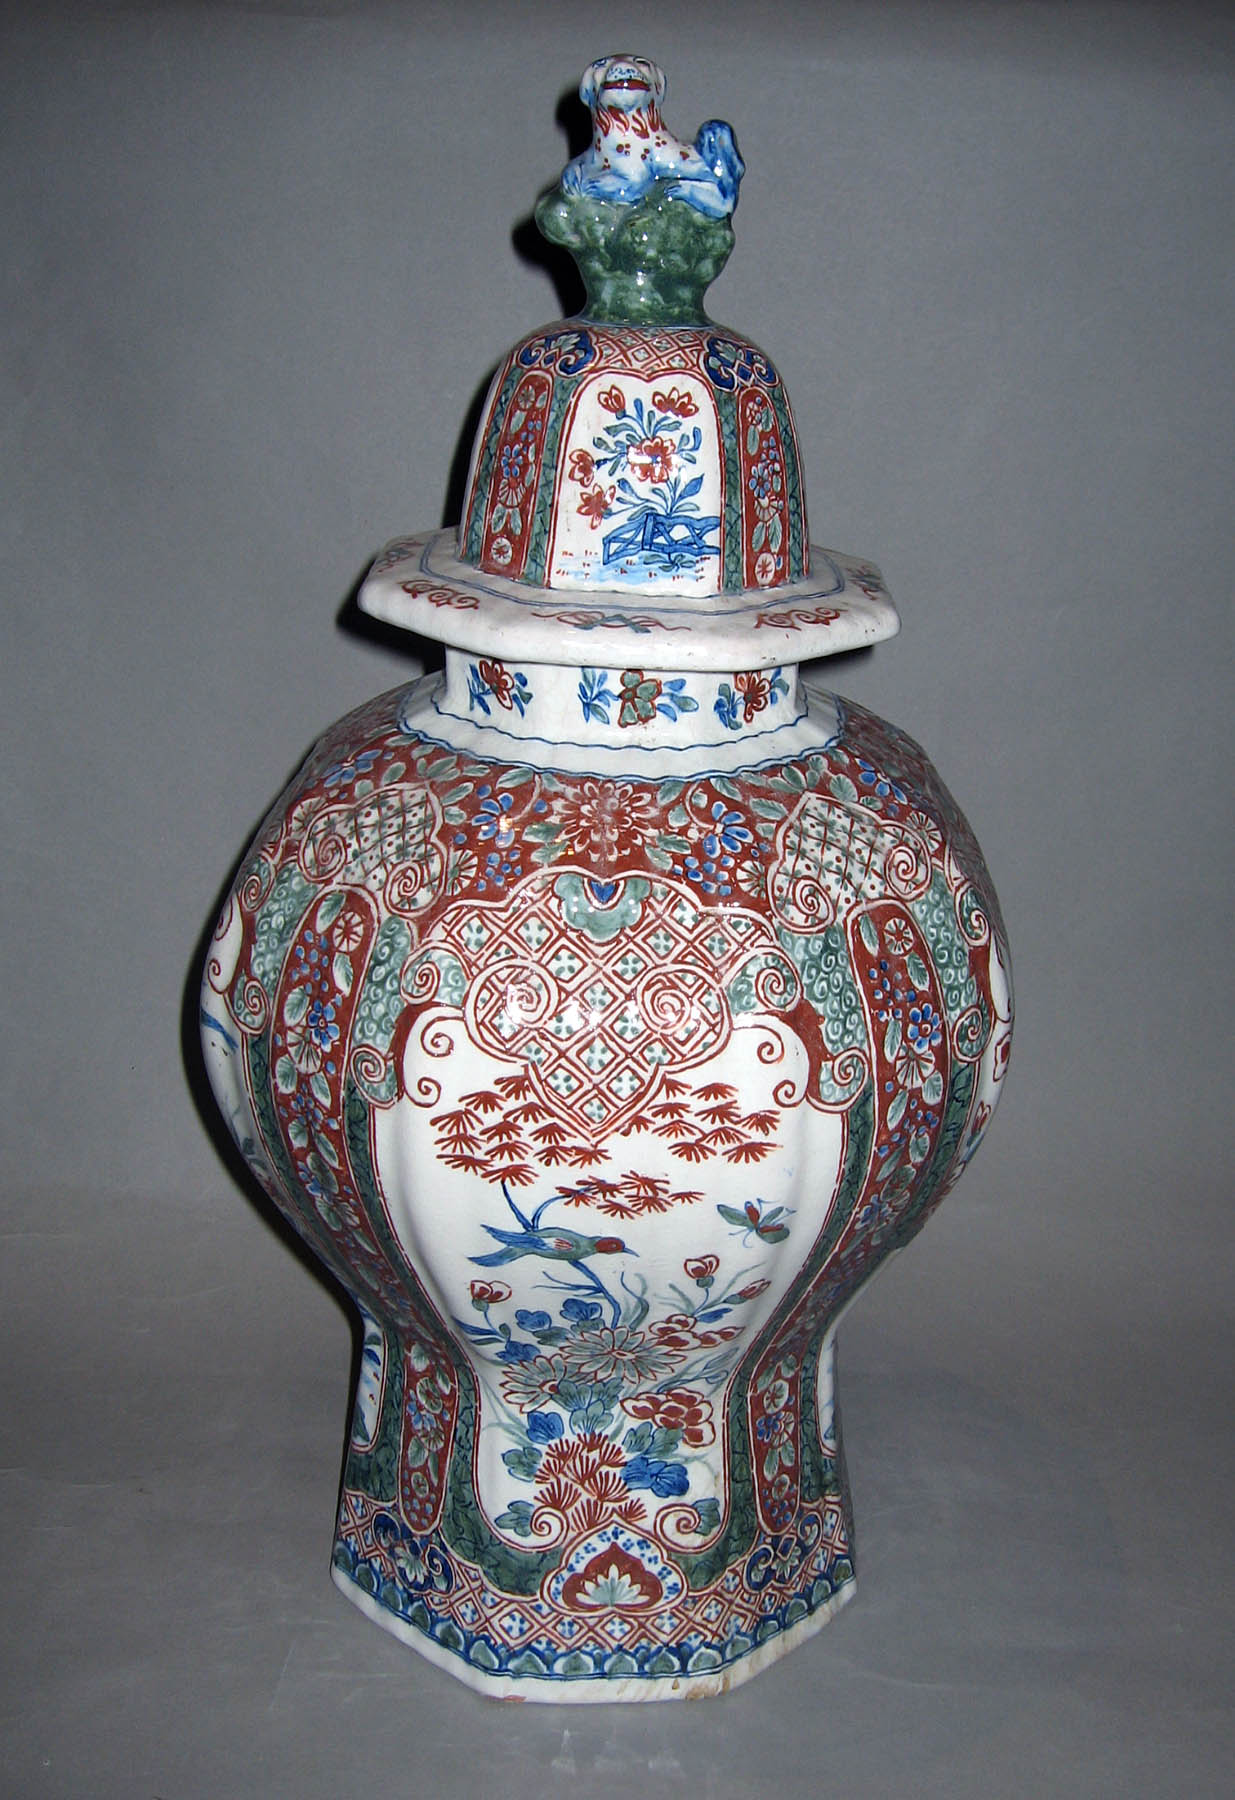 1982.0017.001 A, B Earthenware vase